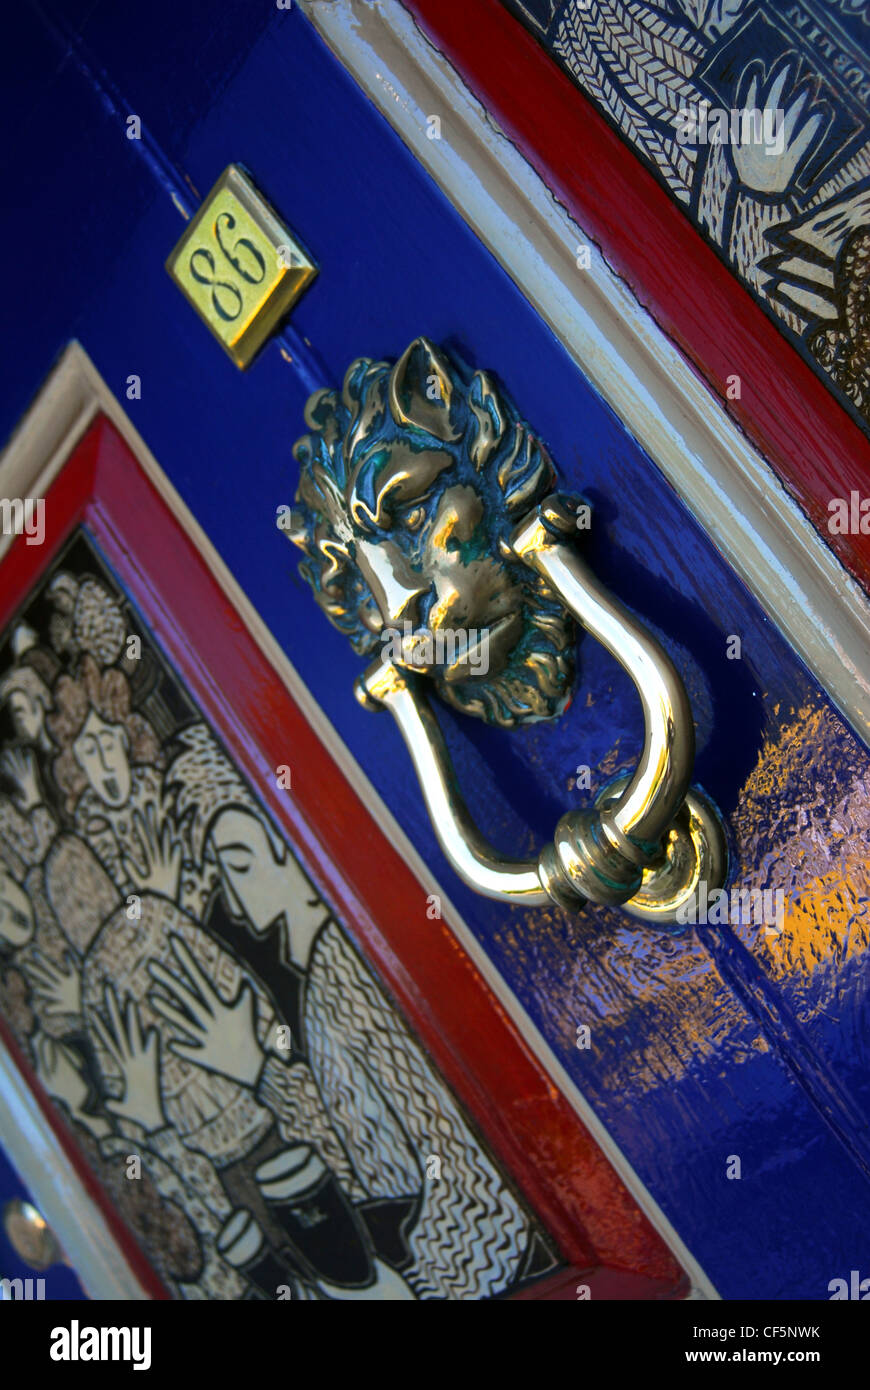 An ornate door knocker at Merrion Square in Dublin. Stock Photo